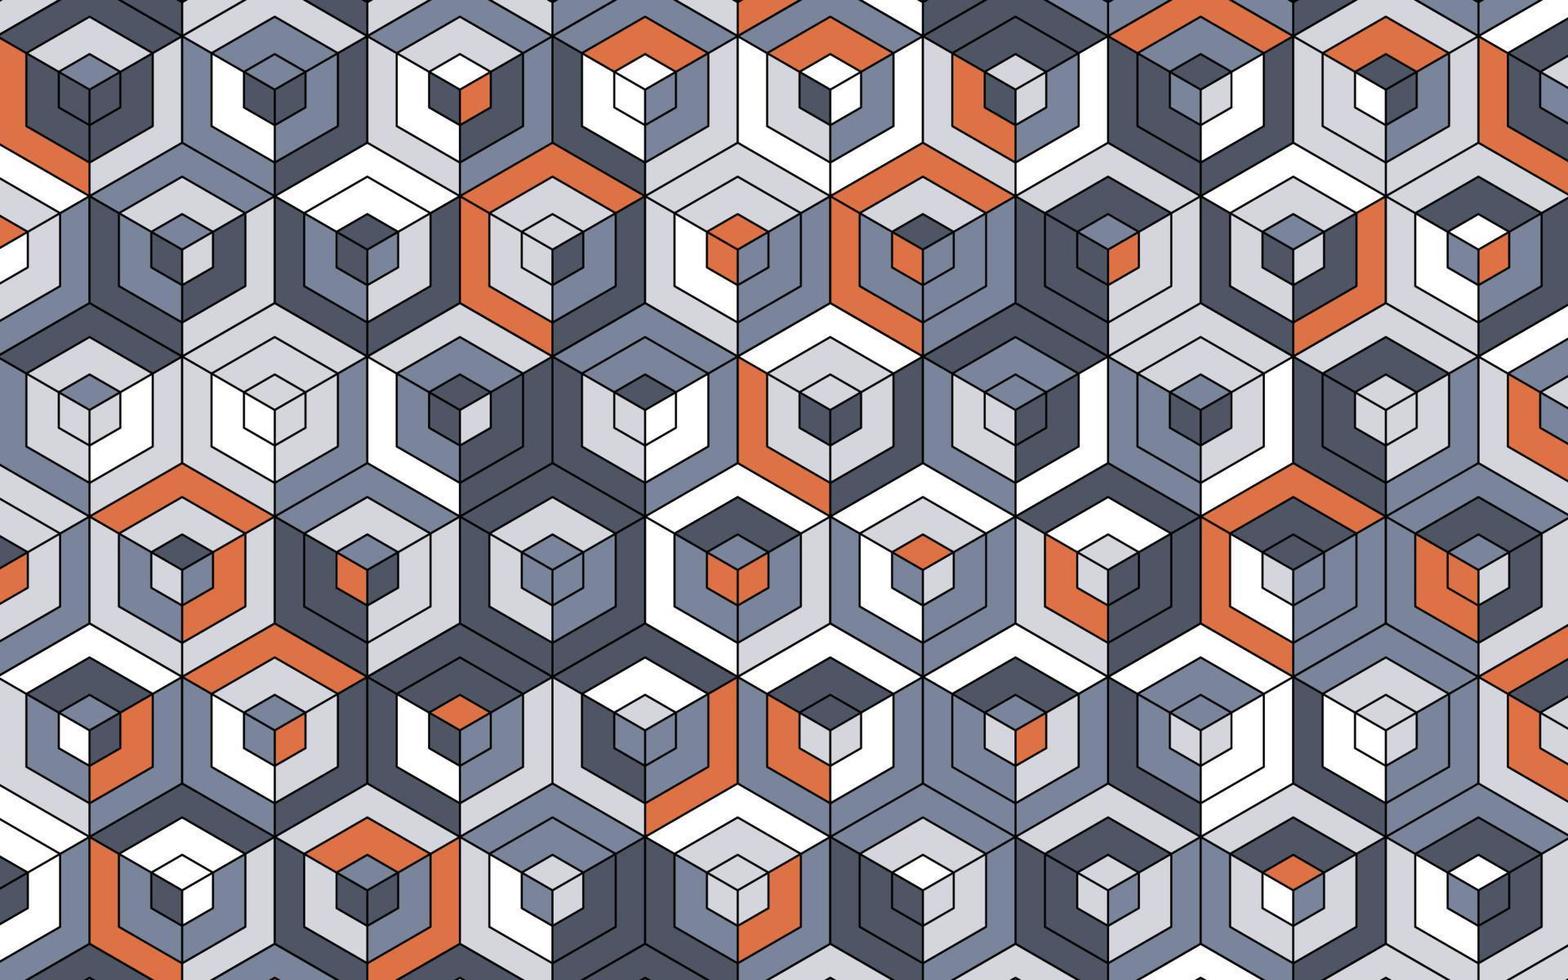 3D-grauer Block-Hexagon-Banner-Hintergrund vektor